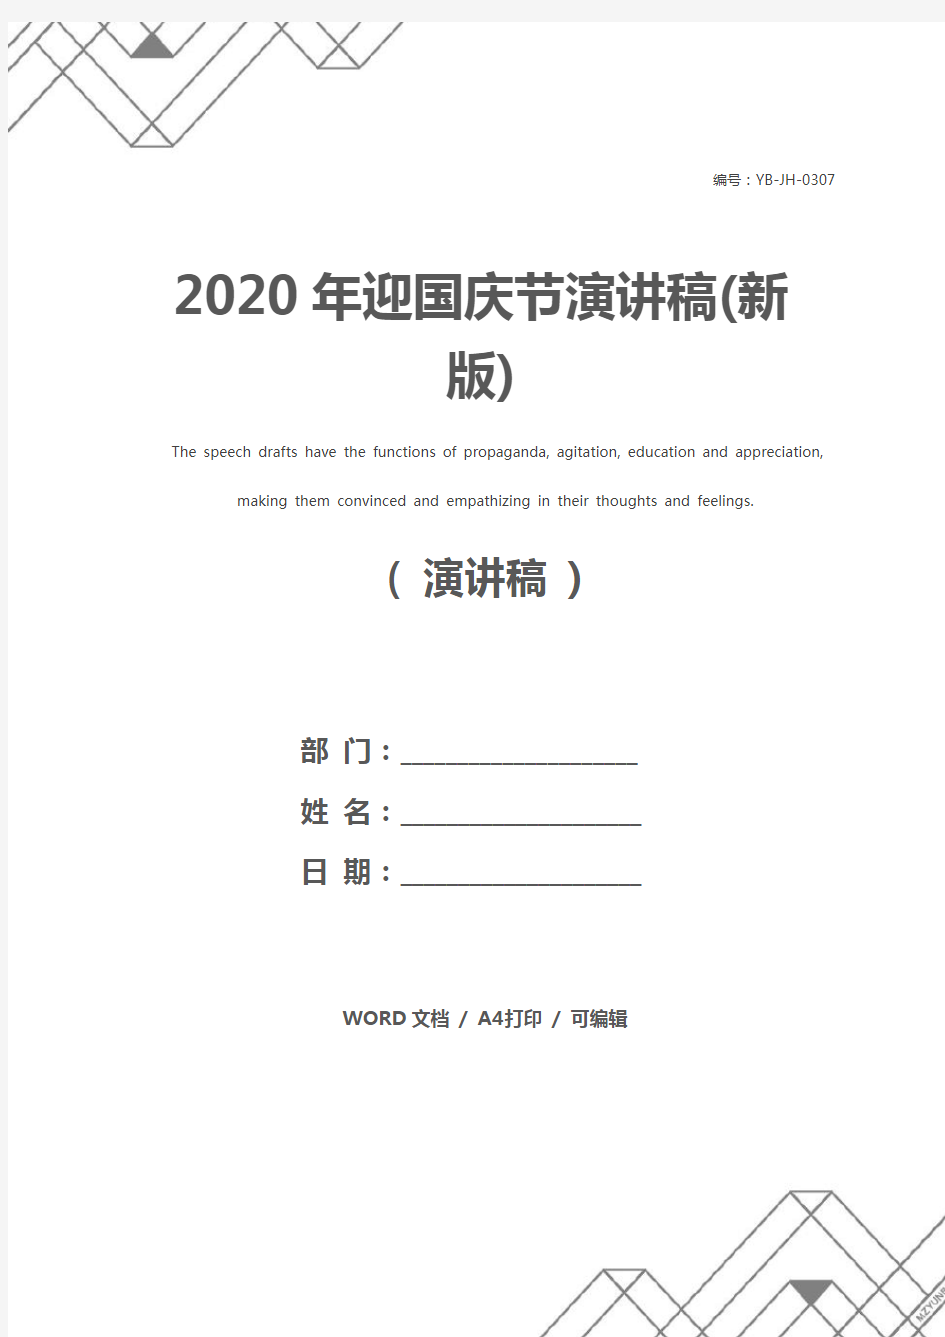 2020年迎国庆节演讲稿(新版)